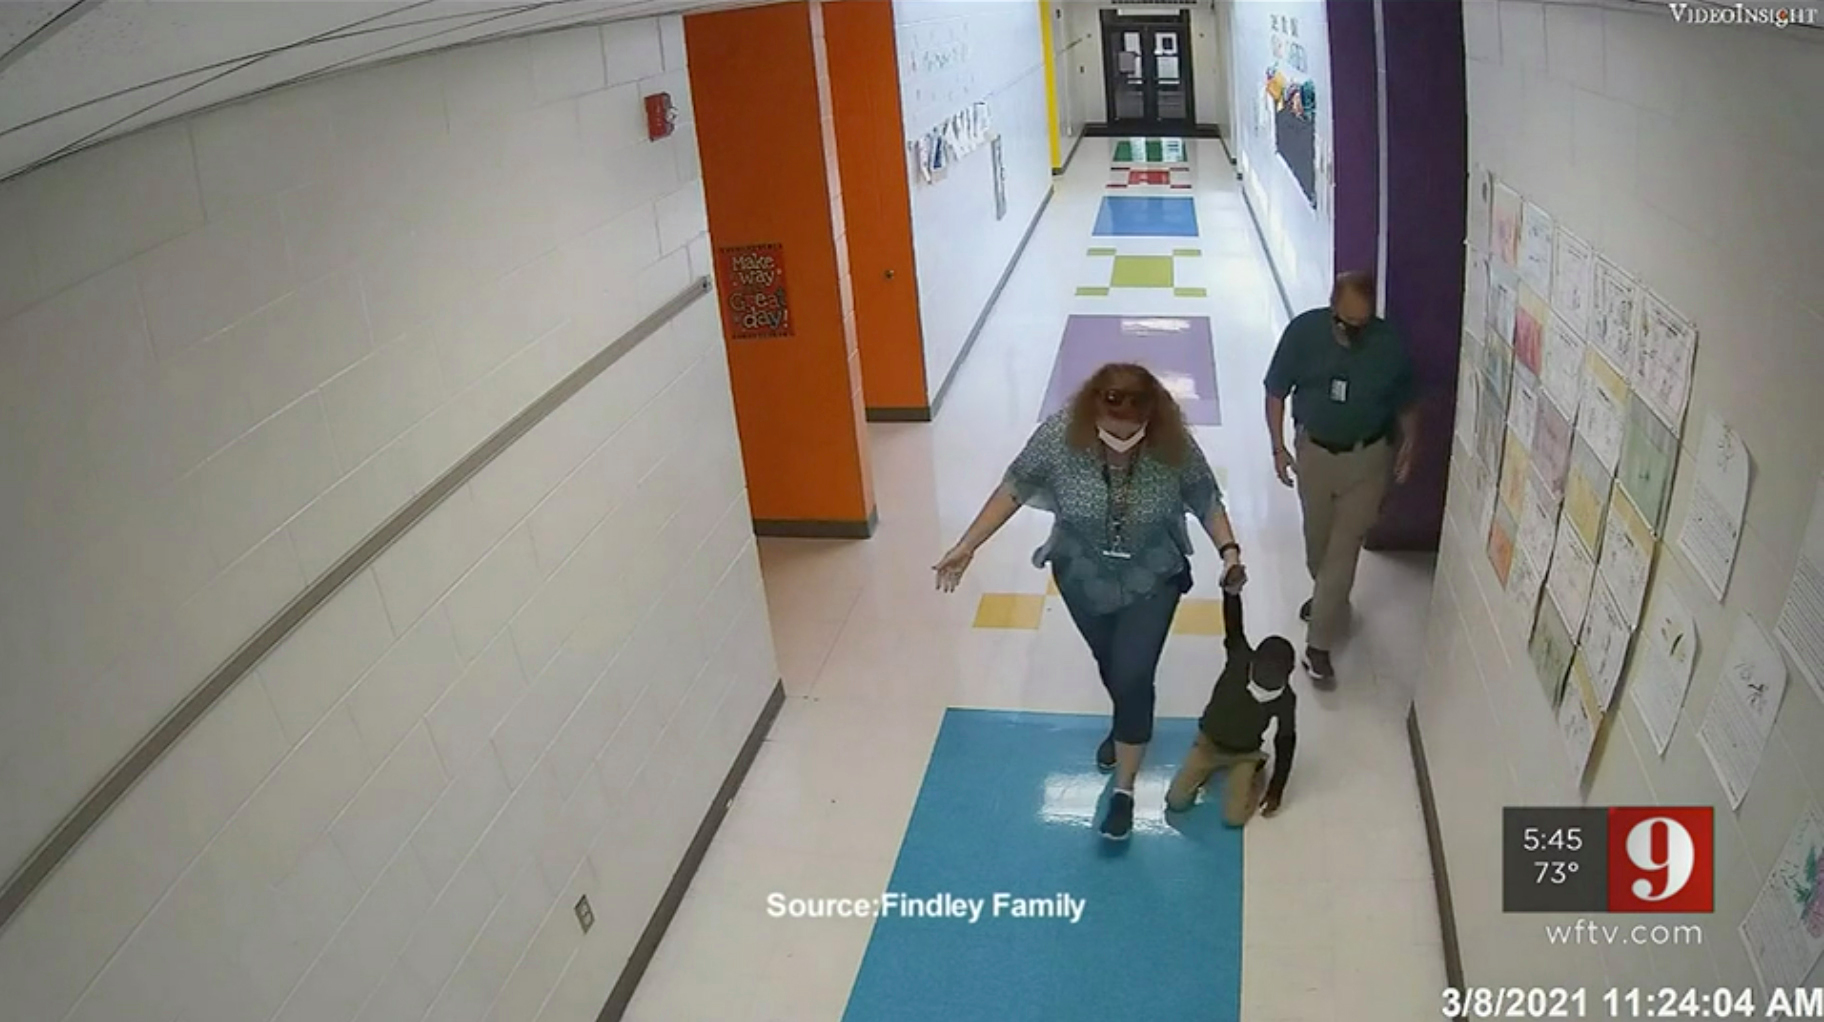 WATCH: ‘Black’ Child Dragged Through Hallway by School Staff